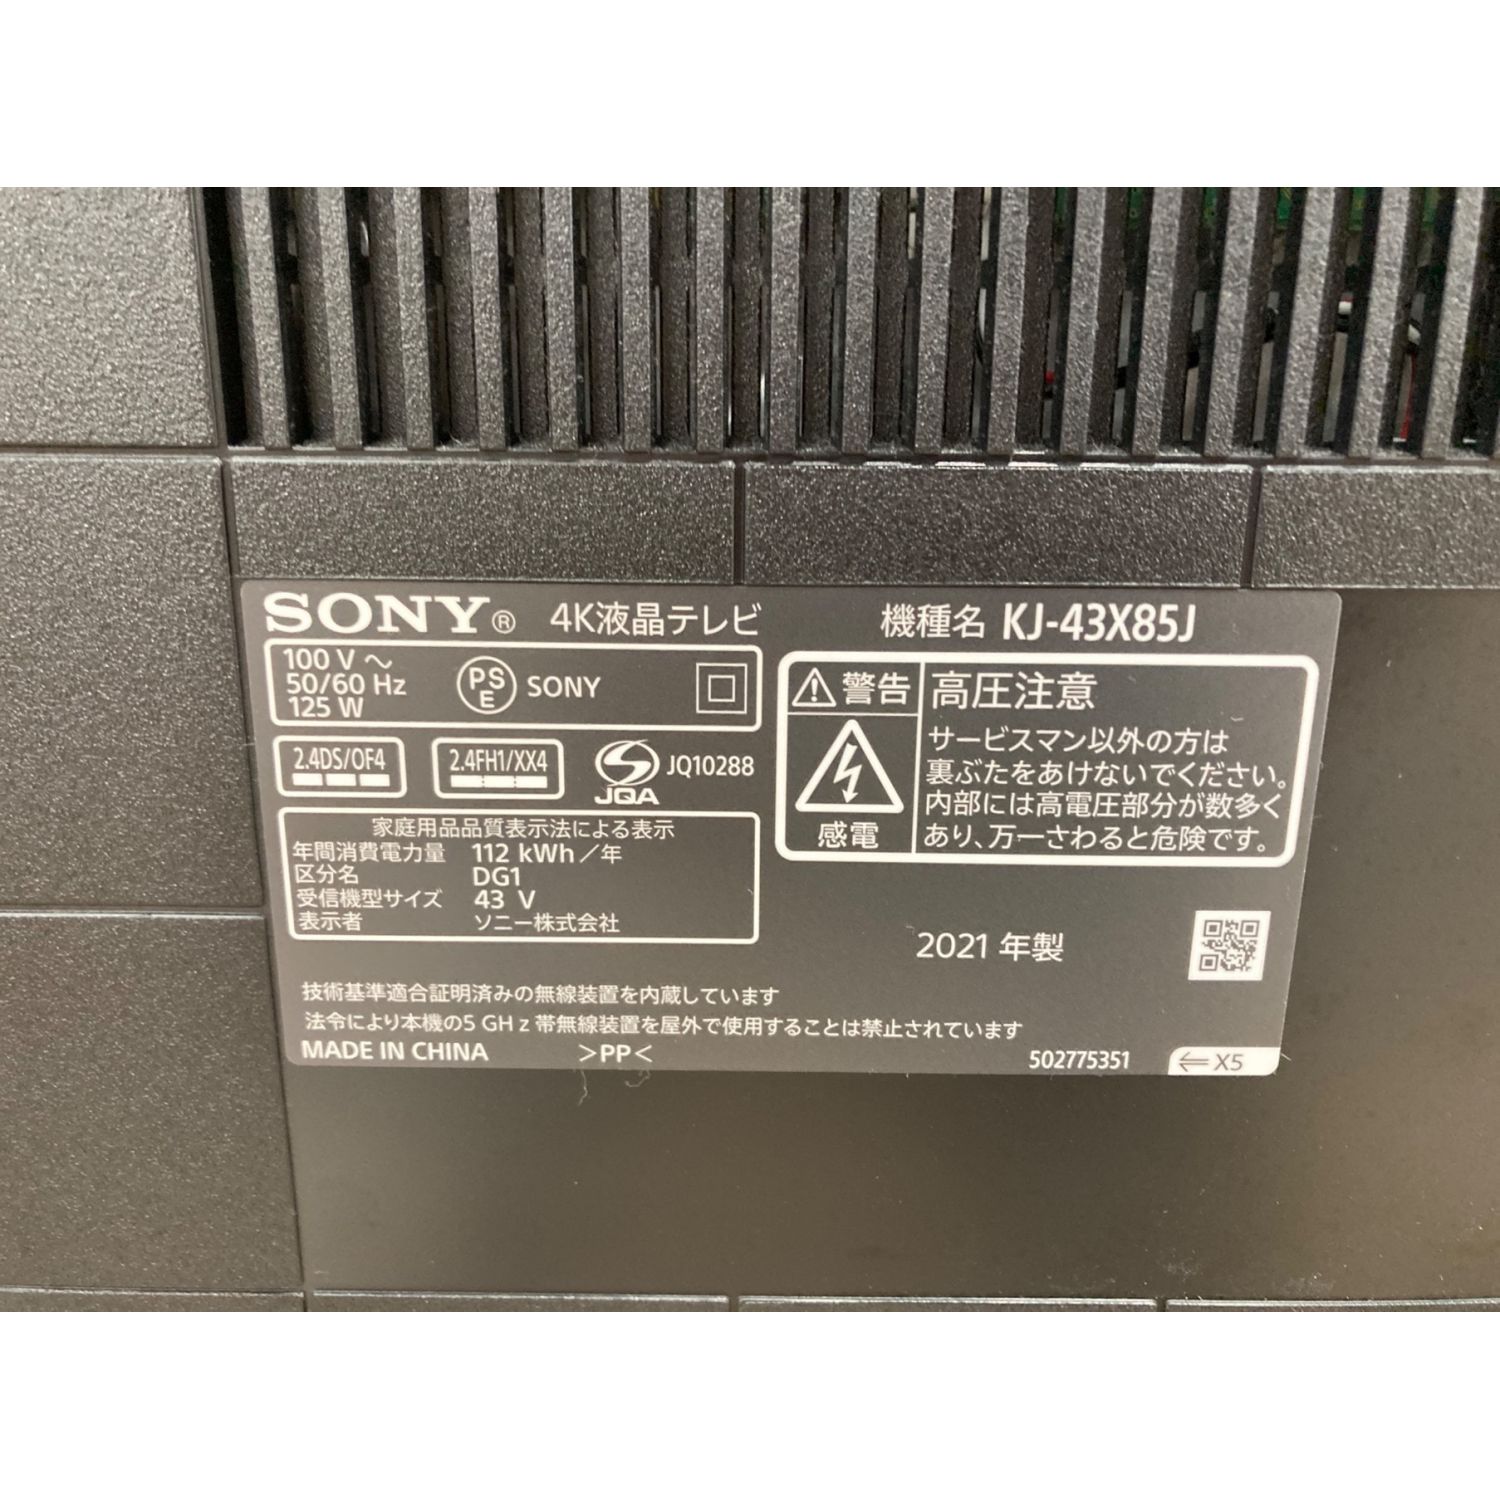 SONY (ソニー) 液晶テレビ KJ-43X85J 2021年製 43インチ 4K対応パネル 